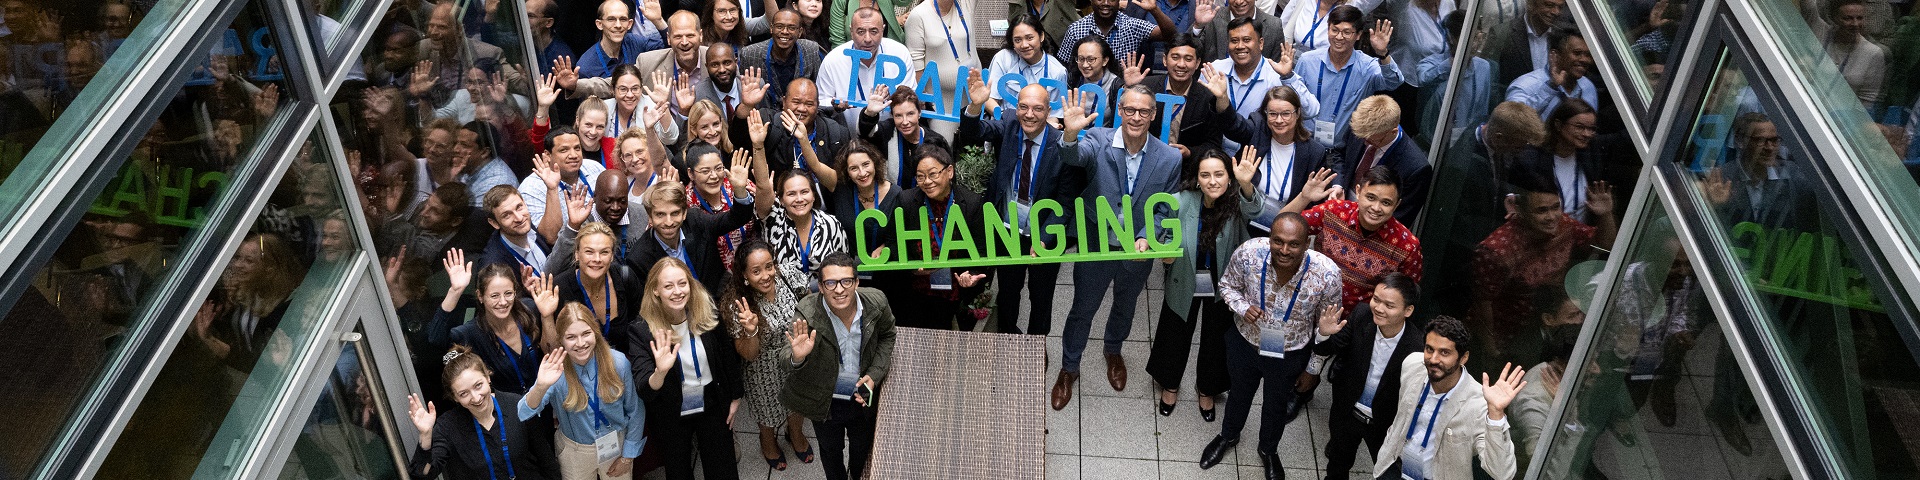 Teilnehmende der Transport and Climate Change Week 2020 posieren für ein Gruppenfoto.